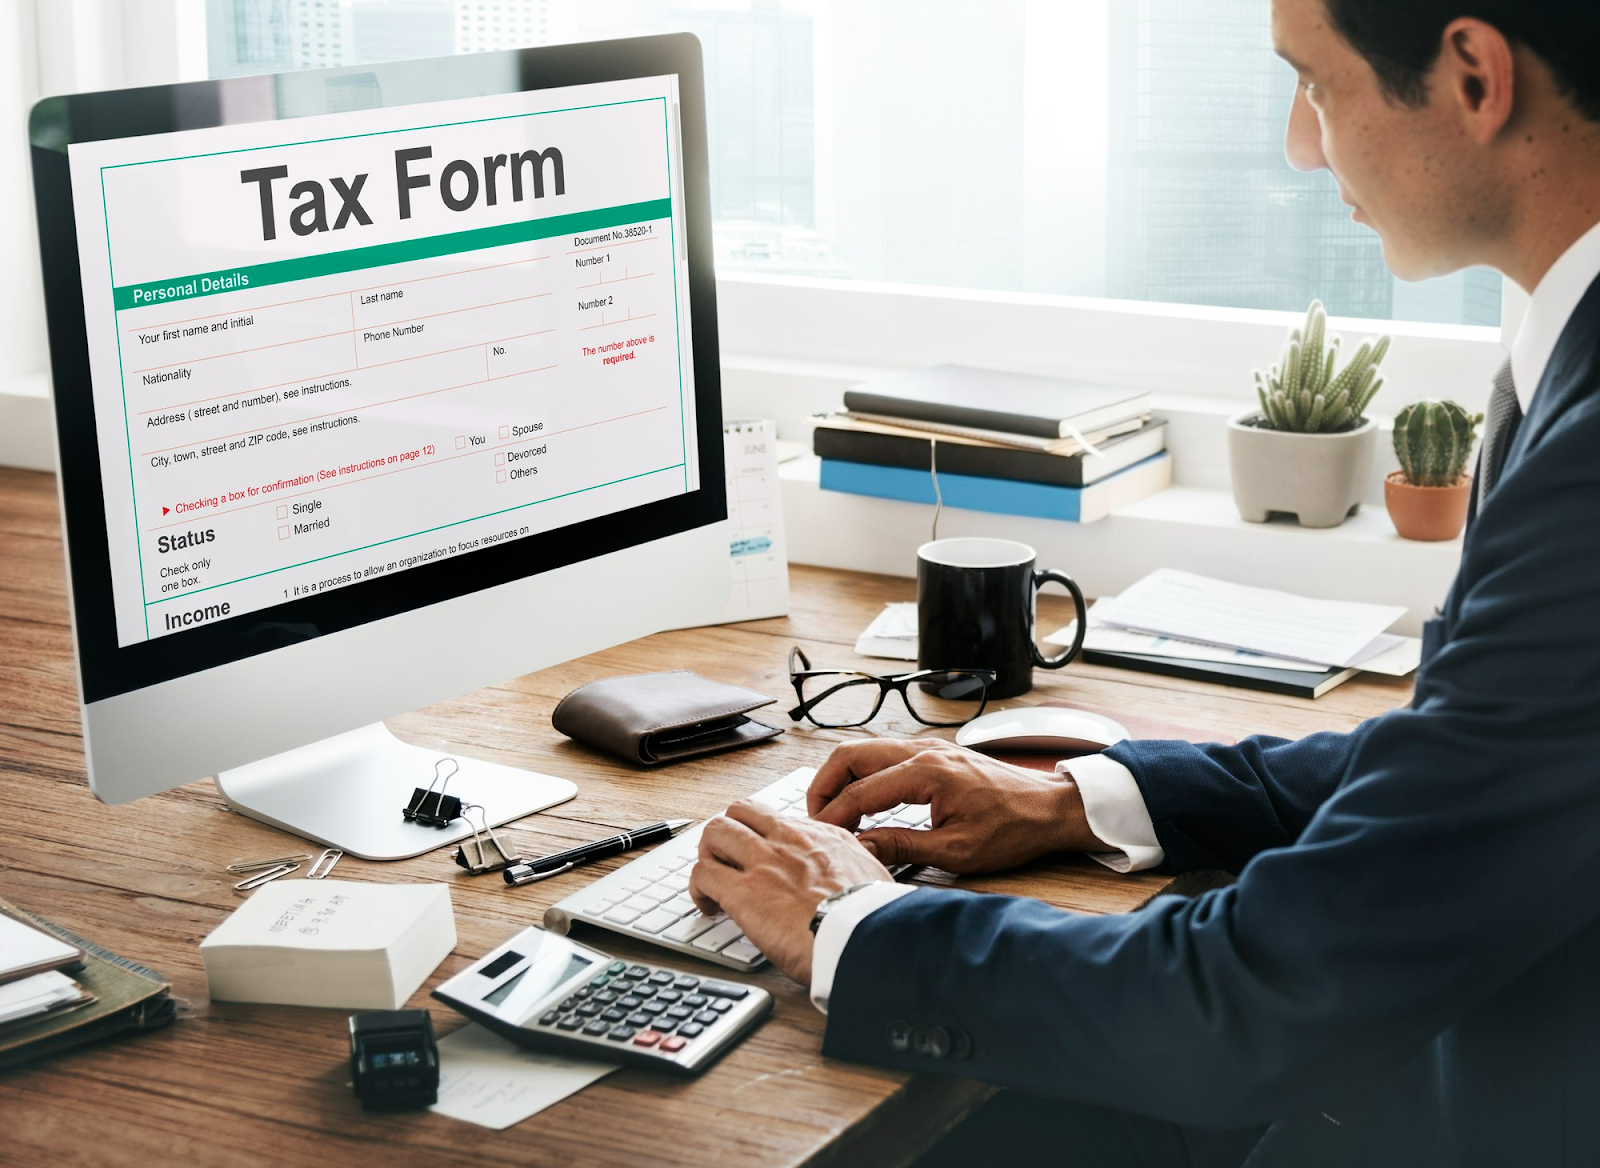 Banyak pemilik bisnis yang tidak paham mengenai pajak sehingga berdampak pada kesalahan dalam membuat laporan keuangan